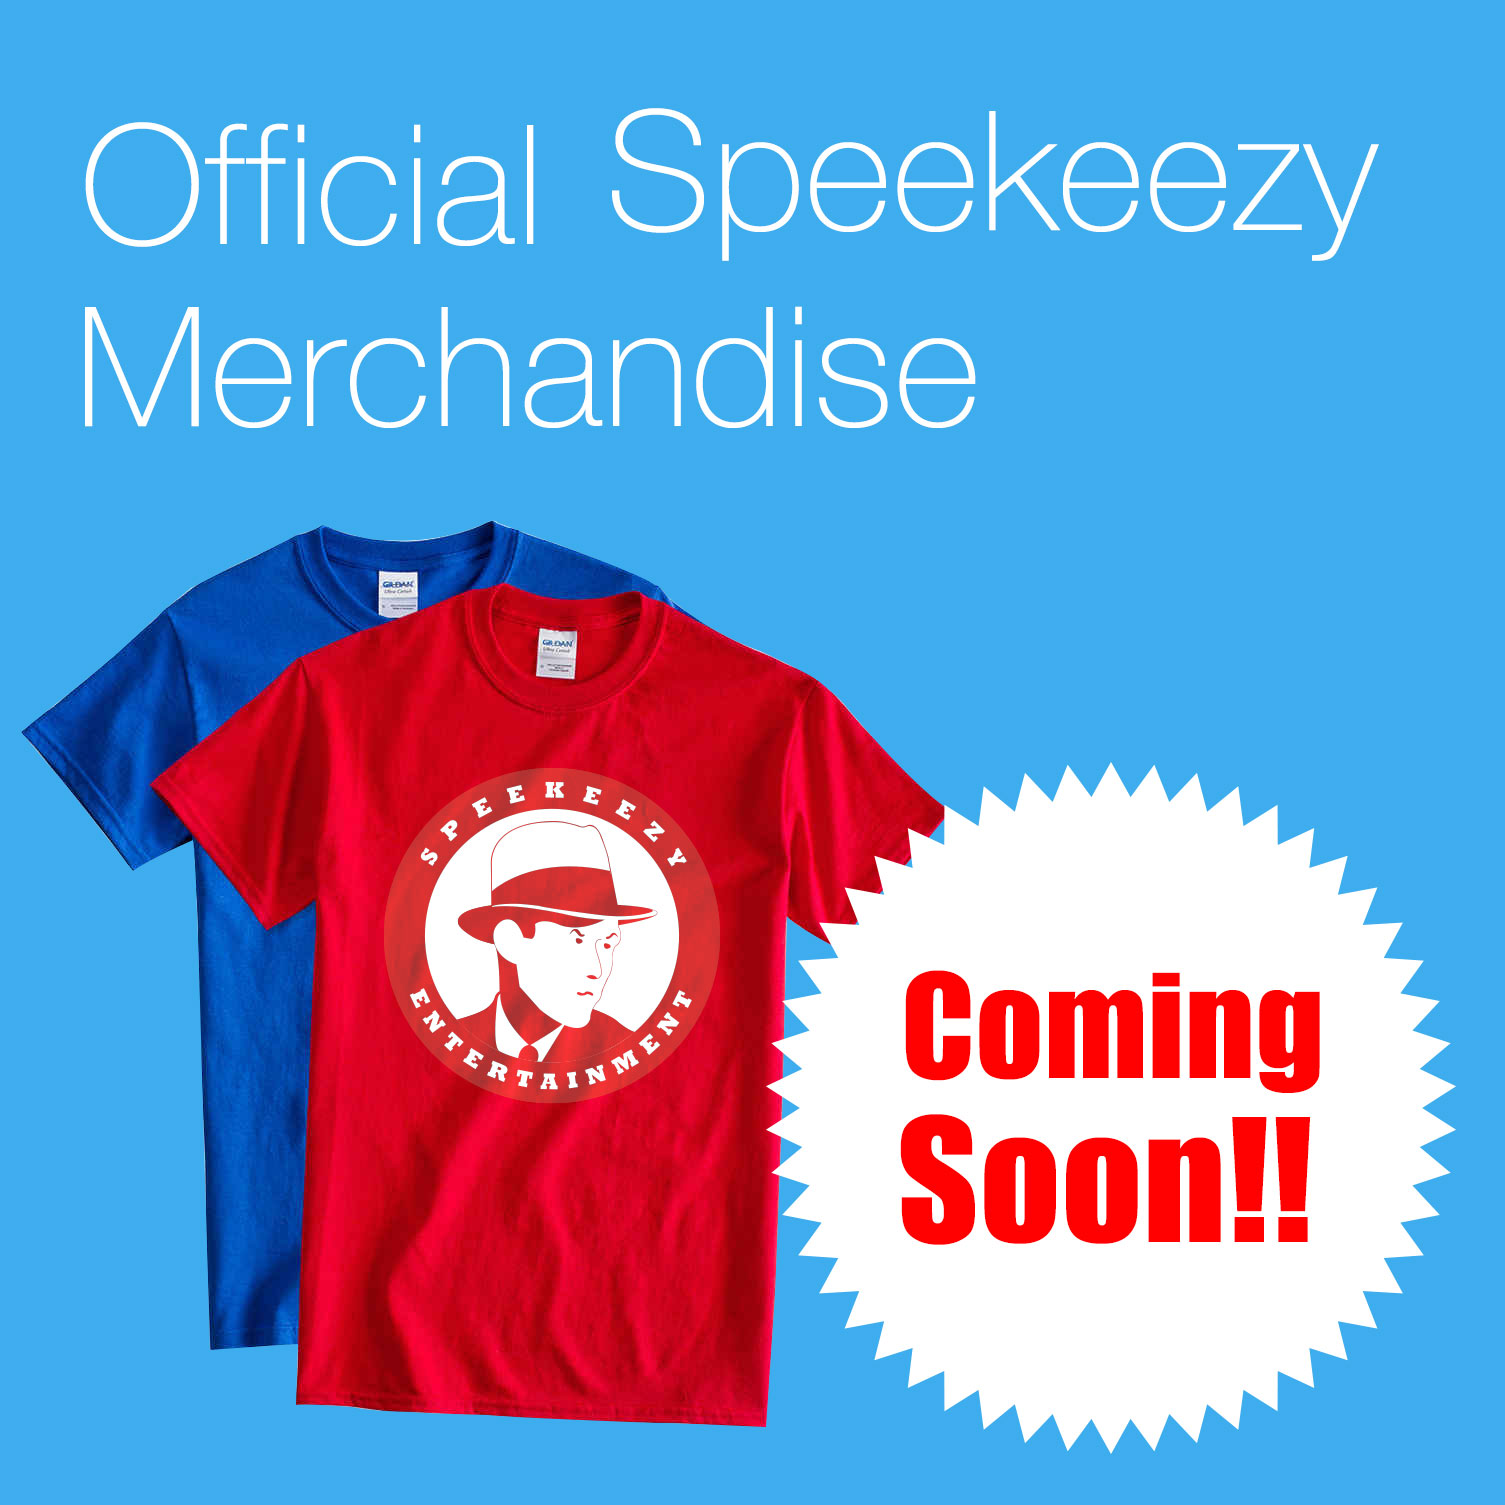 speekeezy merchandise